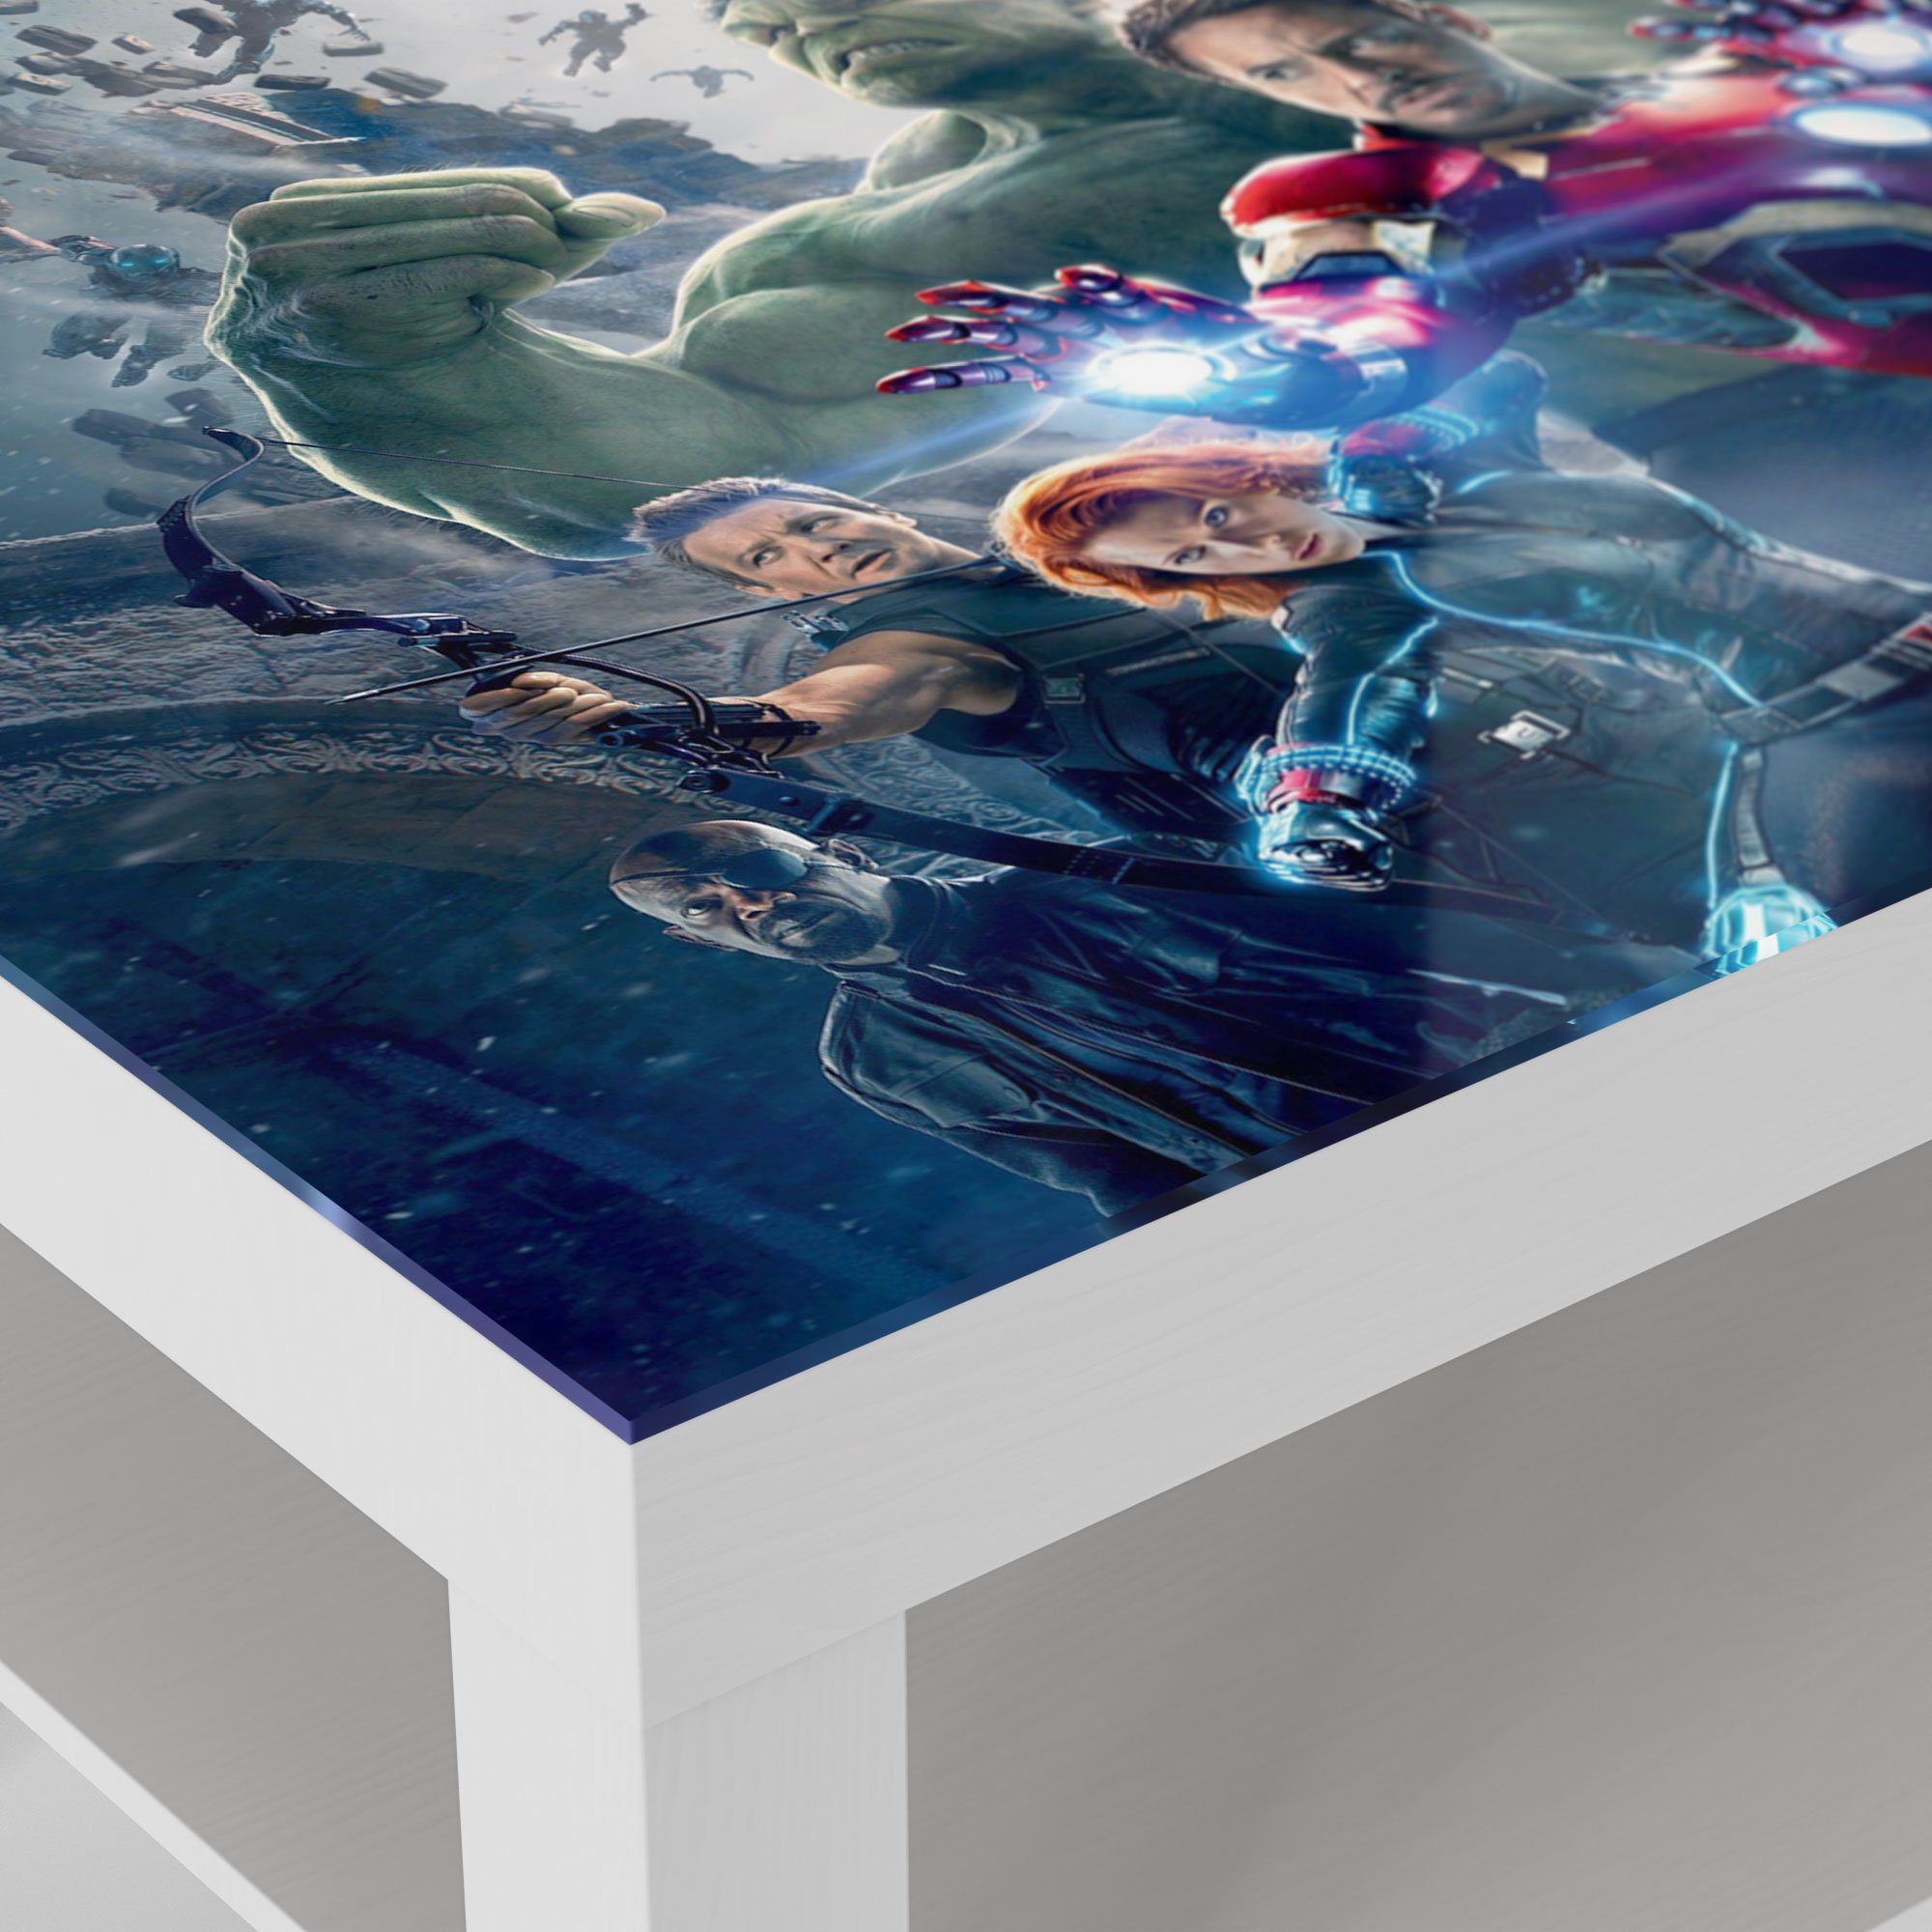 Couchtisch 'Avengers Weiß DEQORI Glas Glastisch Collage', modern Beistelltisch Gruppen